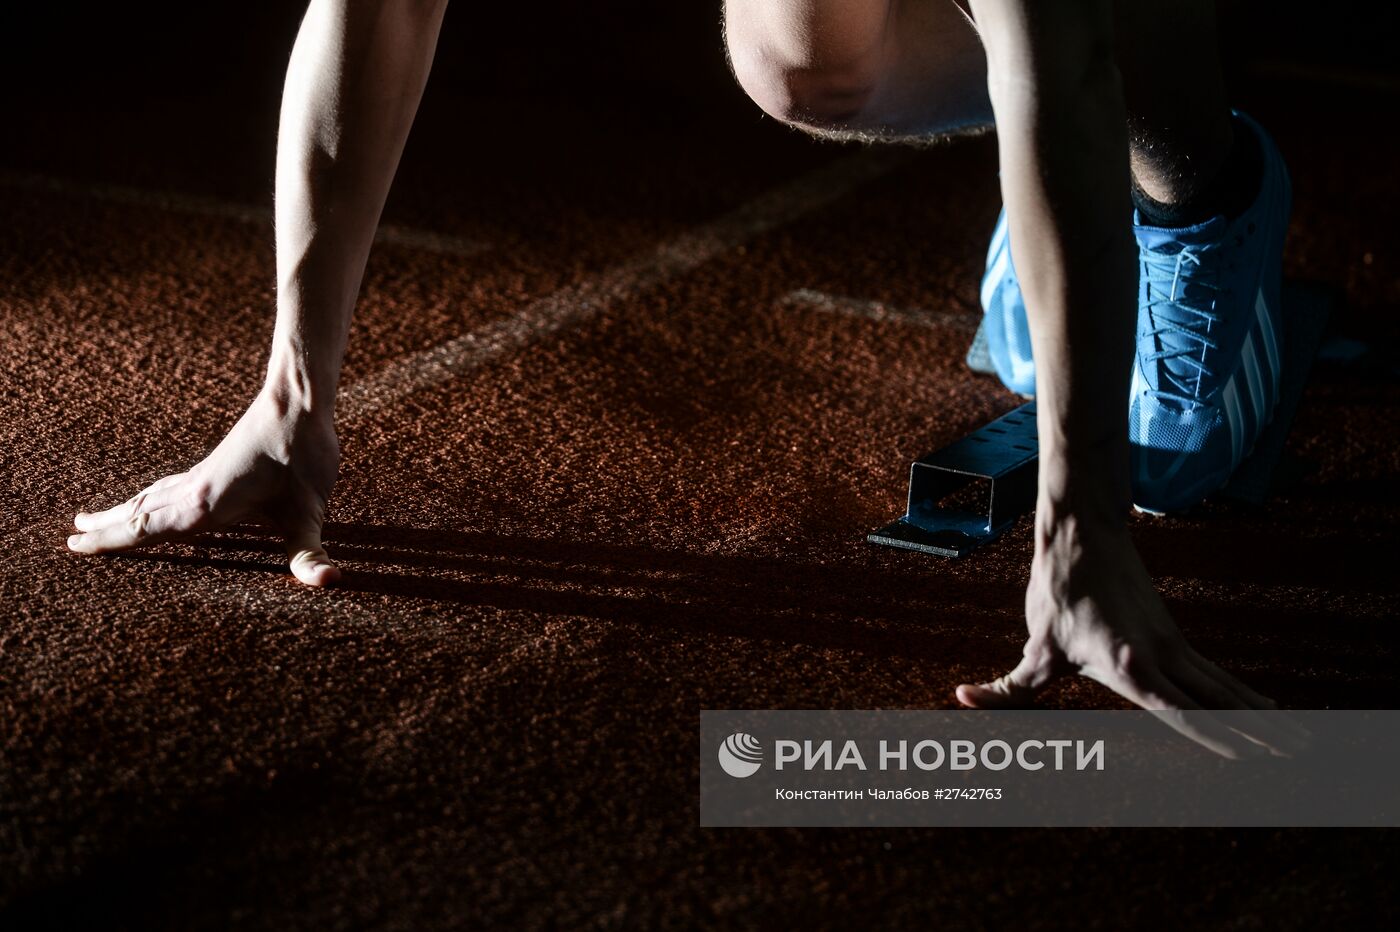 Занятия лёгкой атлетикой в Великом Новгороде